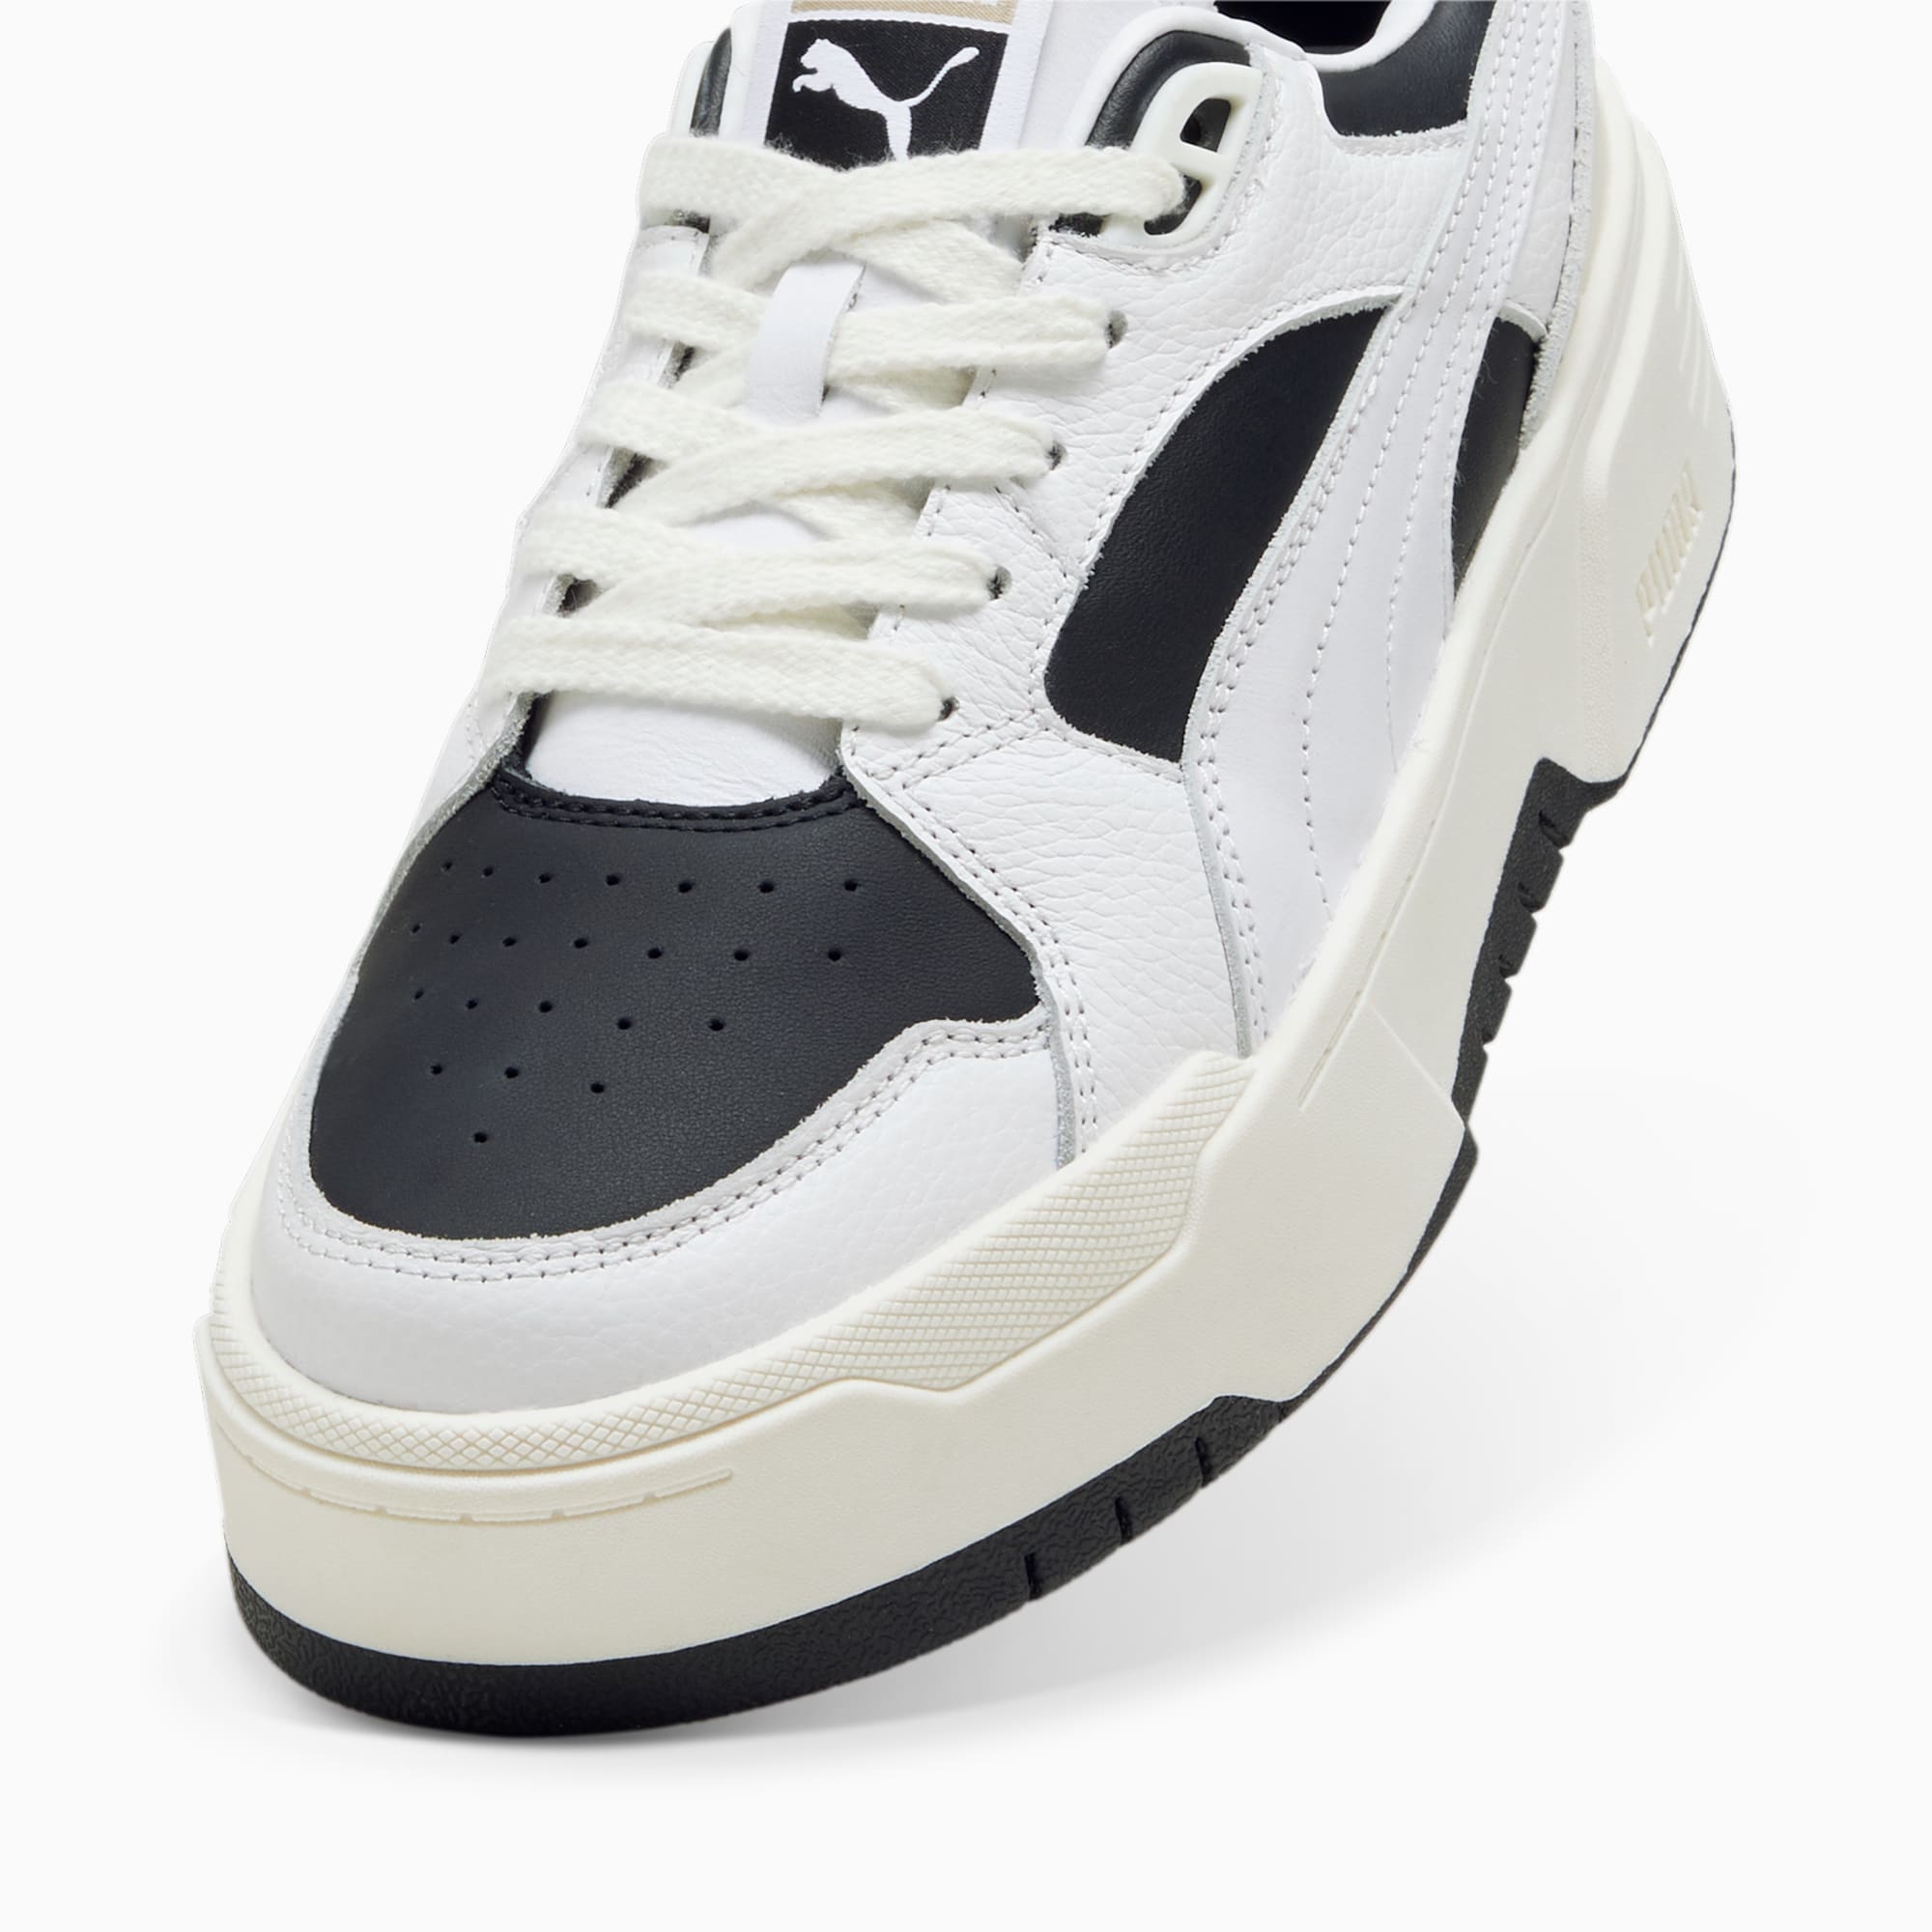 PUMA Chaussure Sneakers CA Flyz PRM Femme, Noir/Blanc